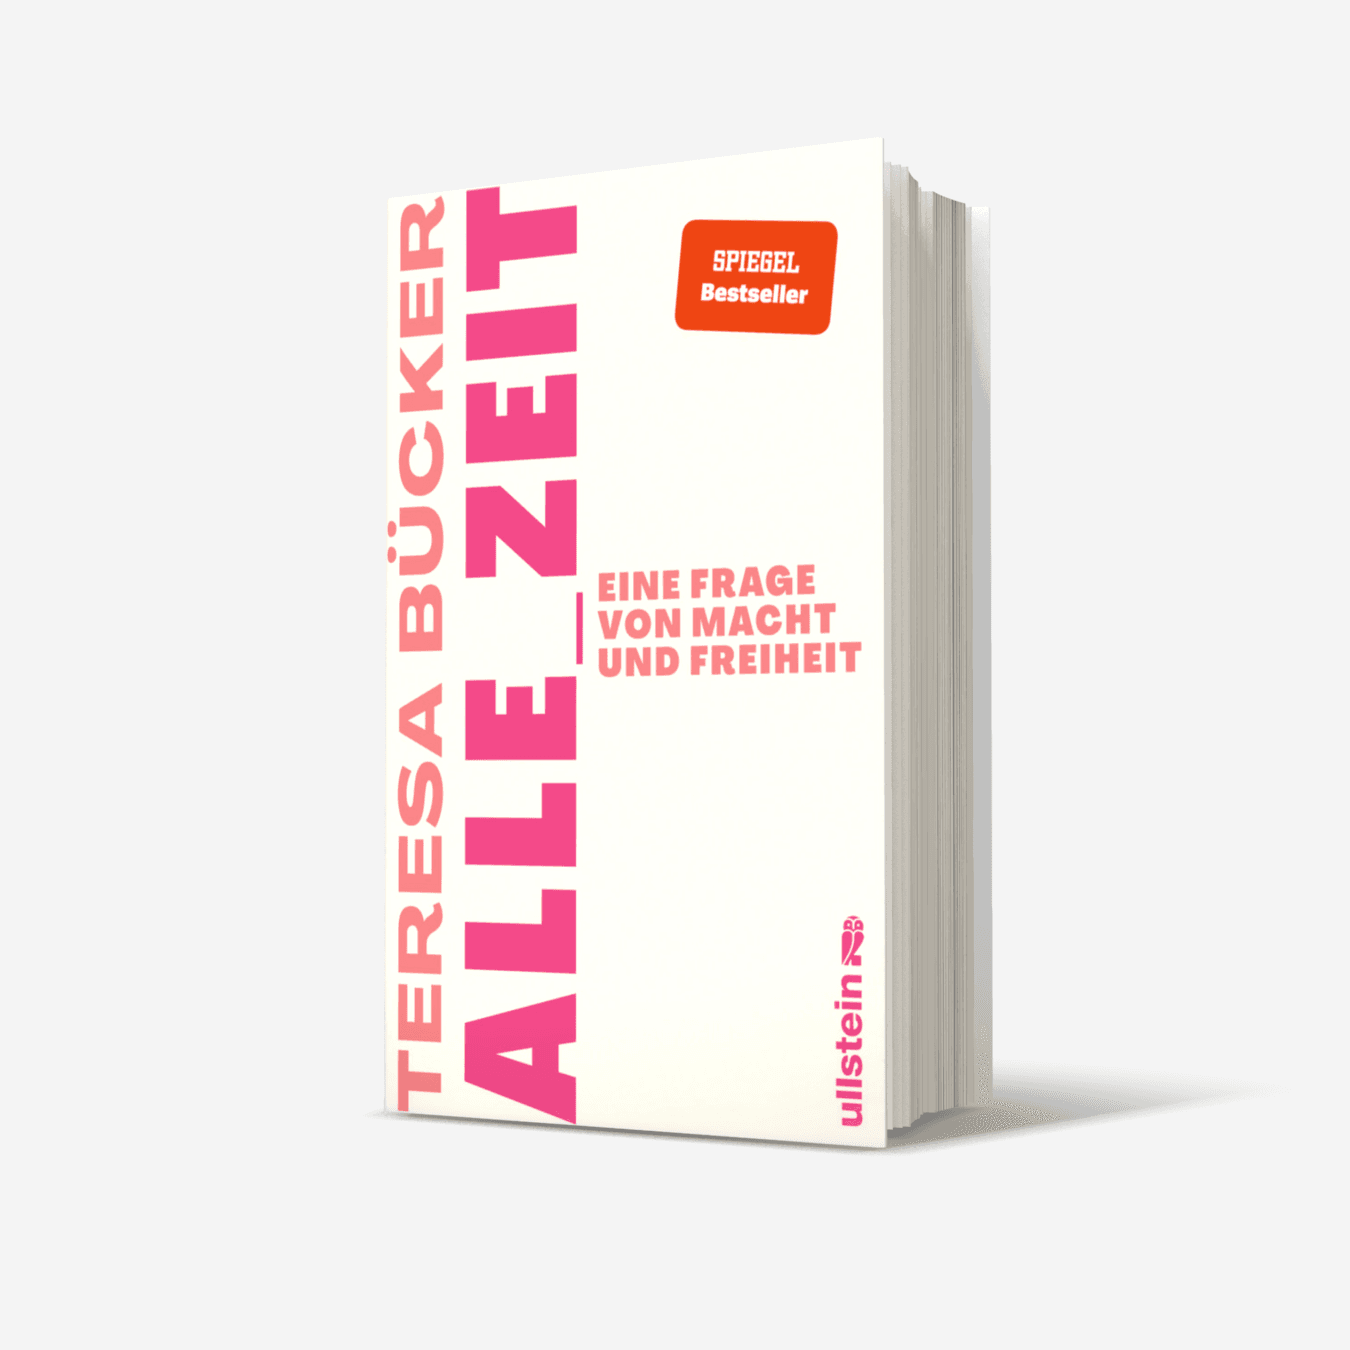 Buchcover von Alle_Zeit